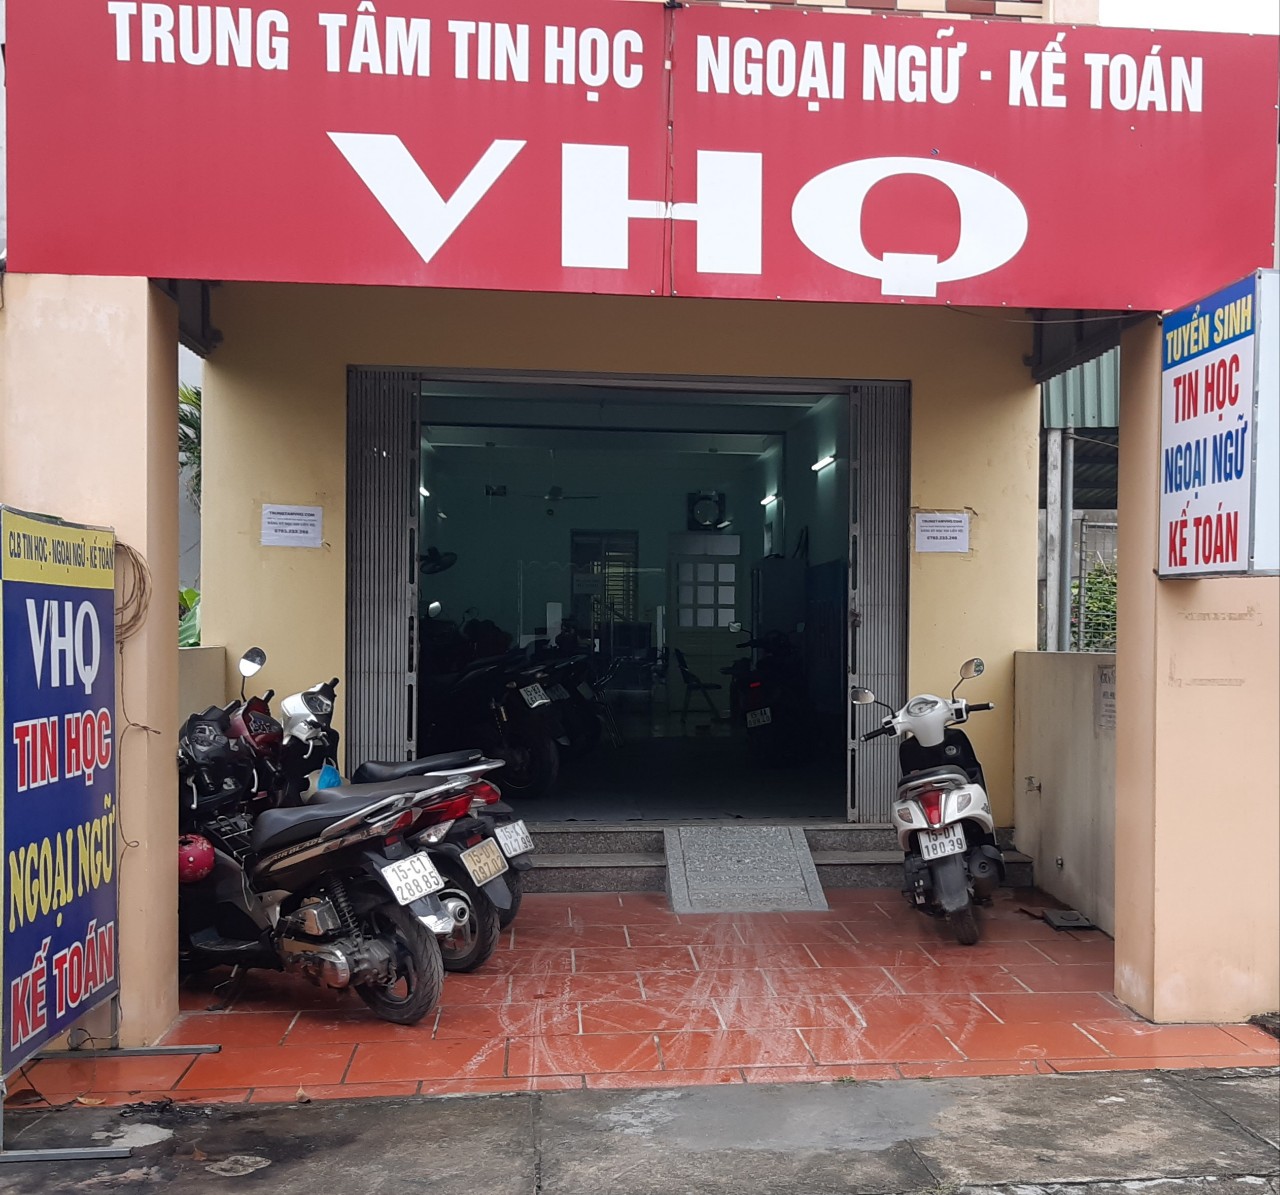 Trung tâm dạy tin học tại Uông Bí Quảng Ninh tốt nhất